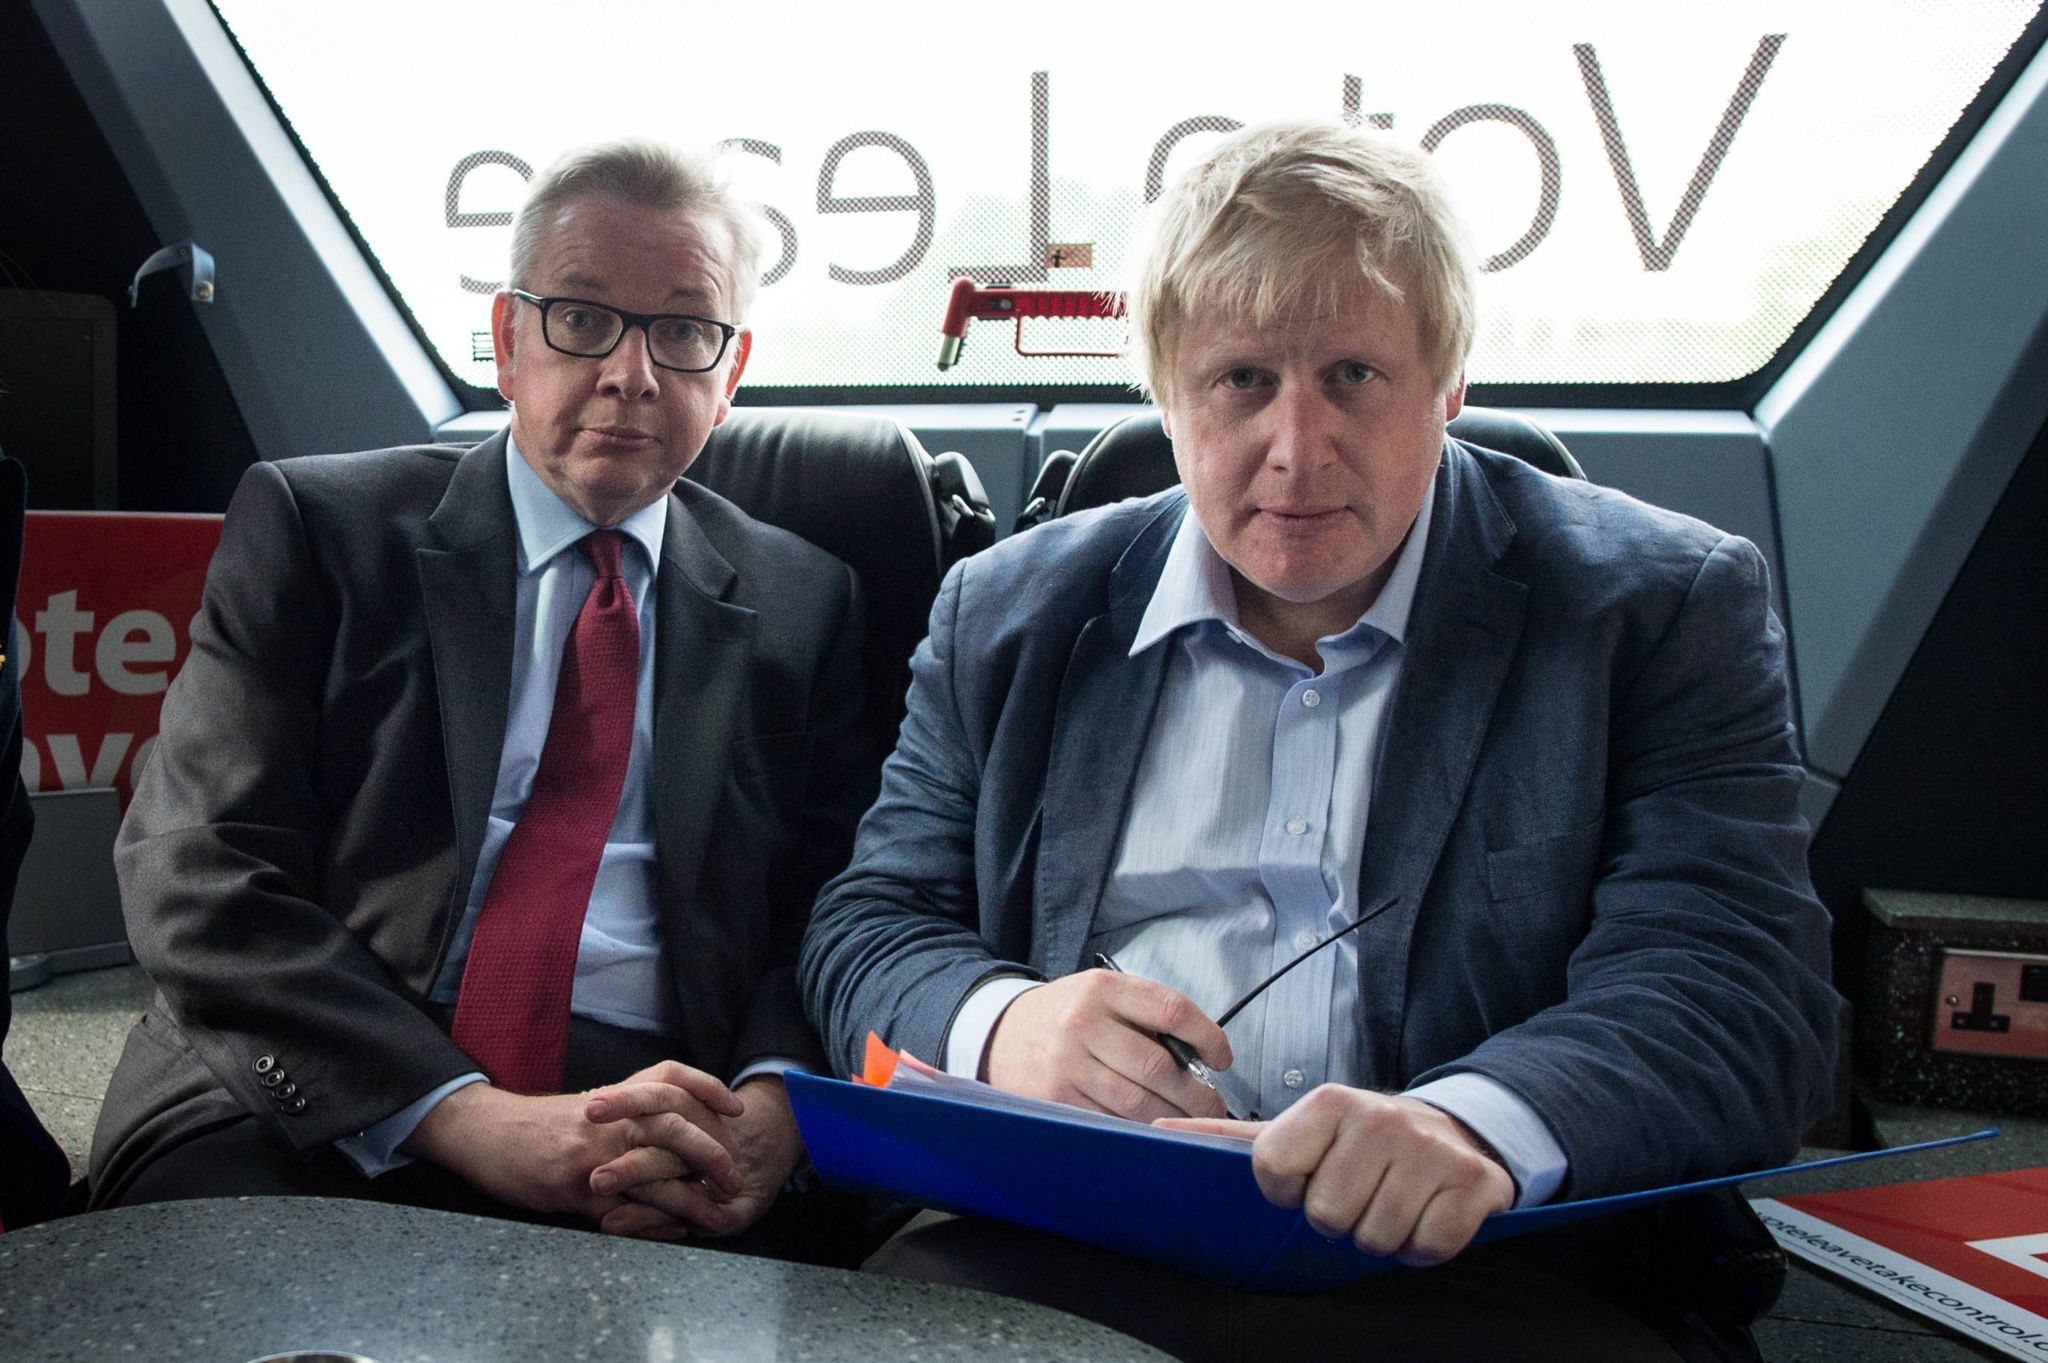 Michael Gove dhe Boris Johnson (djathtas) në autobusin e fushatës Vote Leave në Lancashire, si pjesë e fushatës për referendumin Vote Leave nga BE